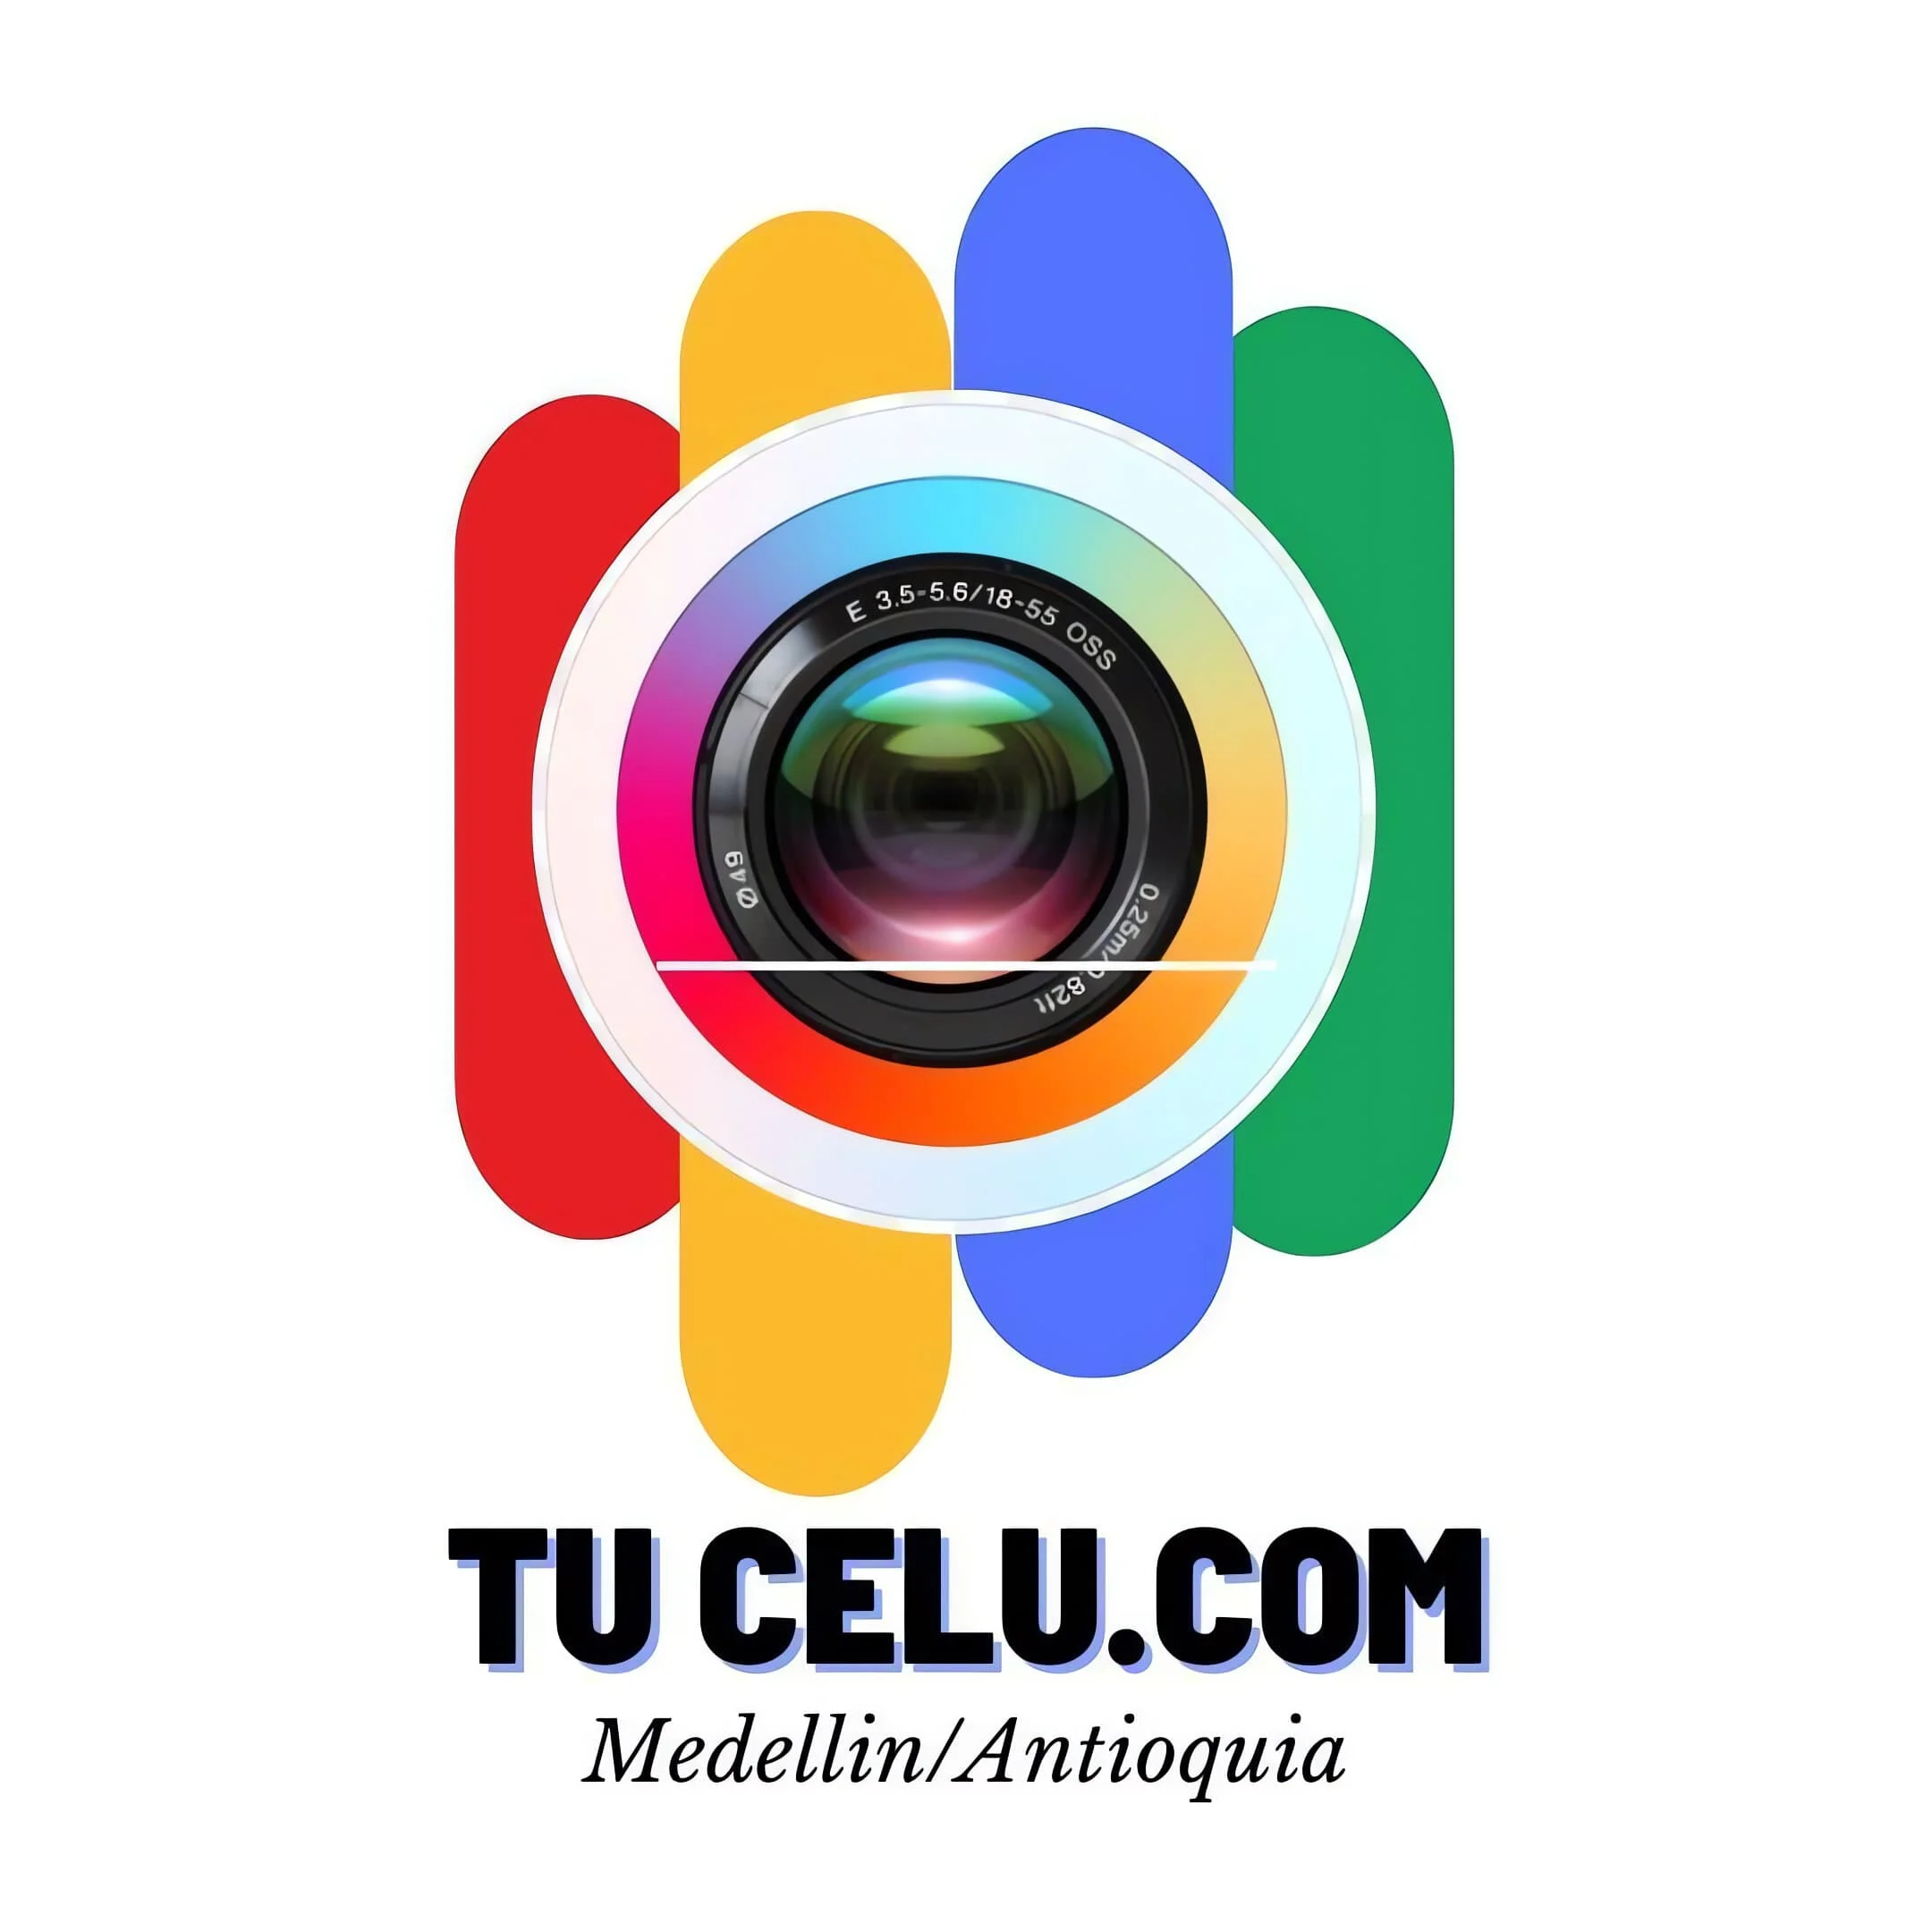 Celulares-tu-celucom-13862